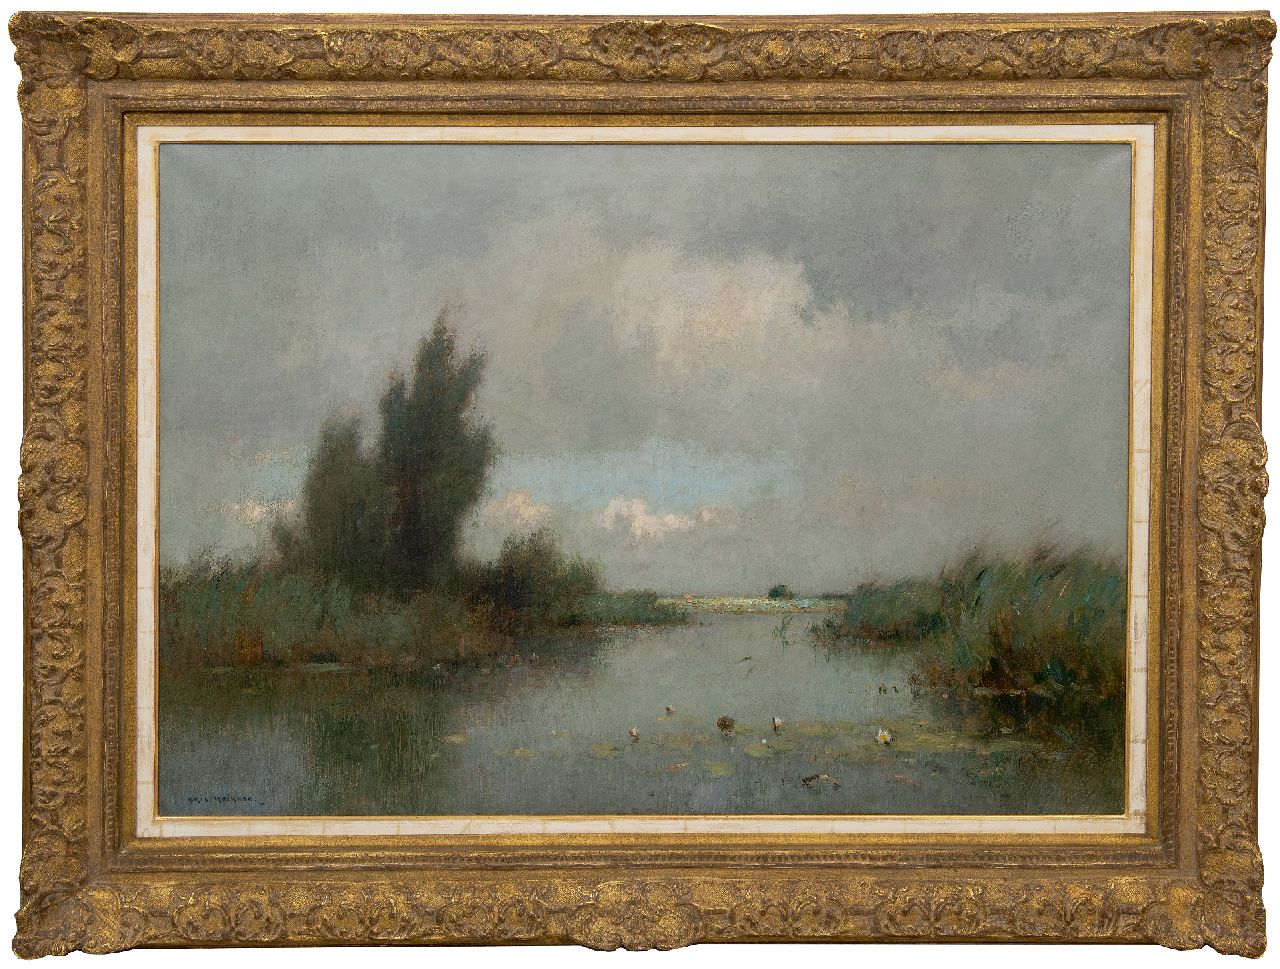 Knikker A.  | Aris Knikker | Schilderijen te koop aangeboden | Weids plassenlandschap met waterlelies, olieverf op doek 70,3 x 100,4 cm, gesigneerd linksonder